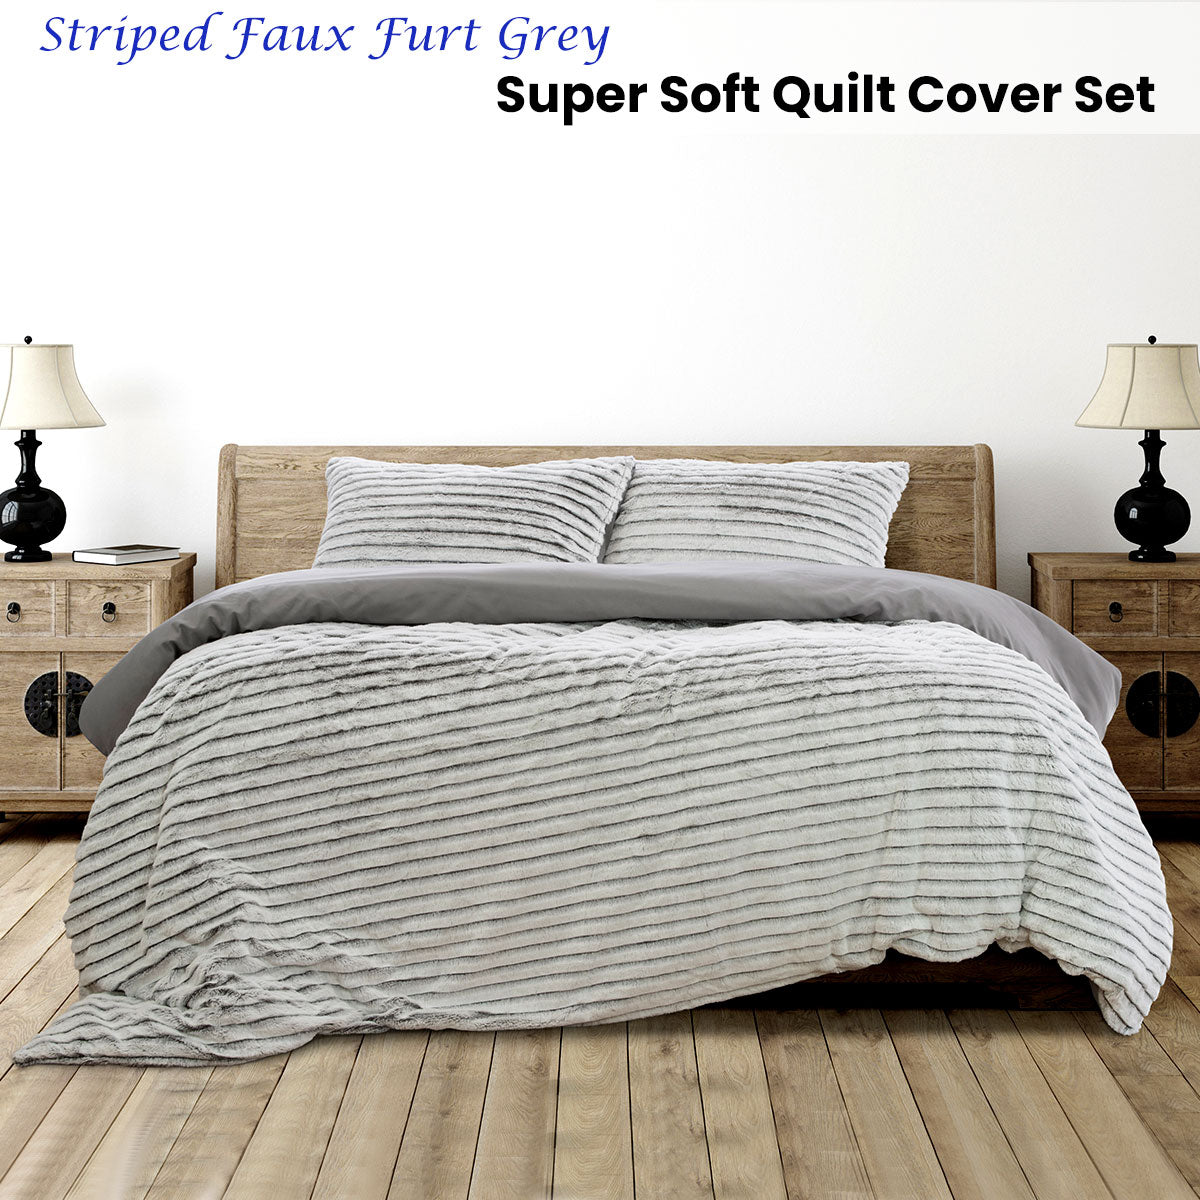 Ardor Striped Faux Fur Grey Super Soft Queen Size Quilt Cover Set